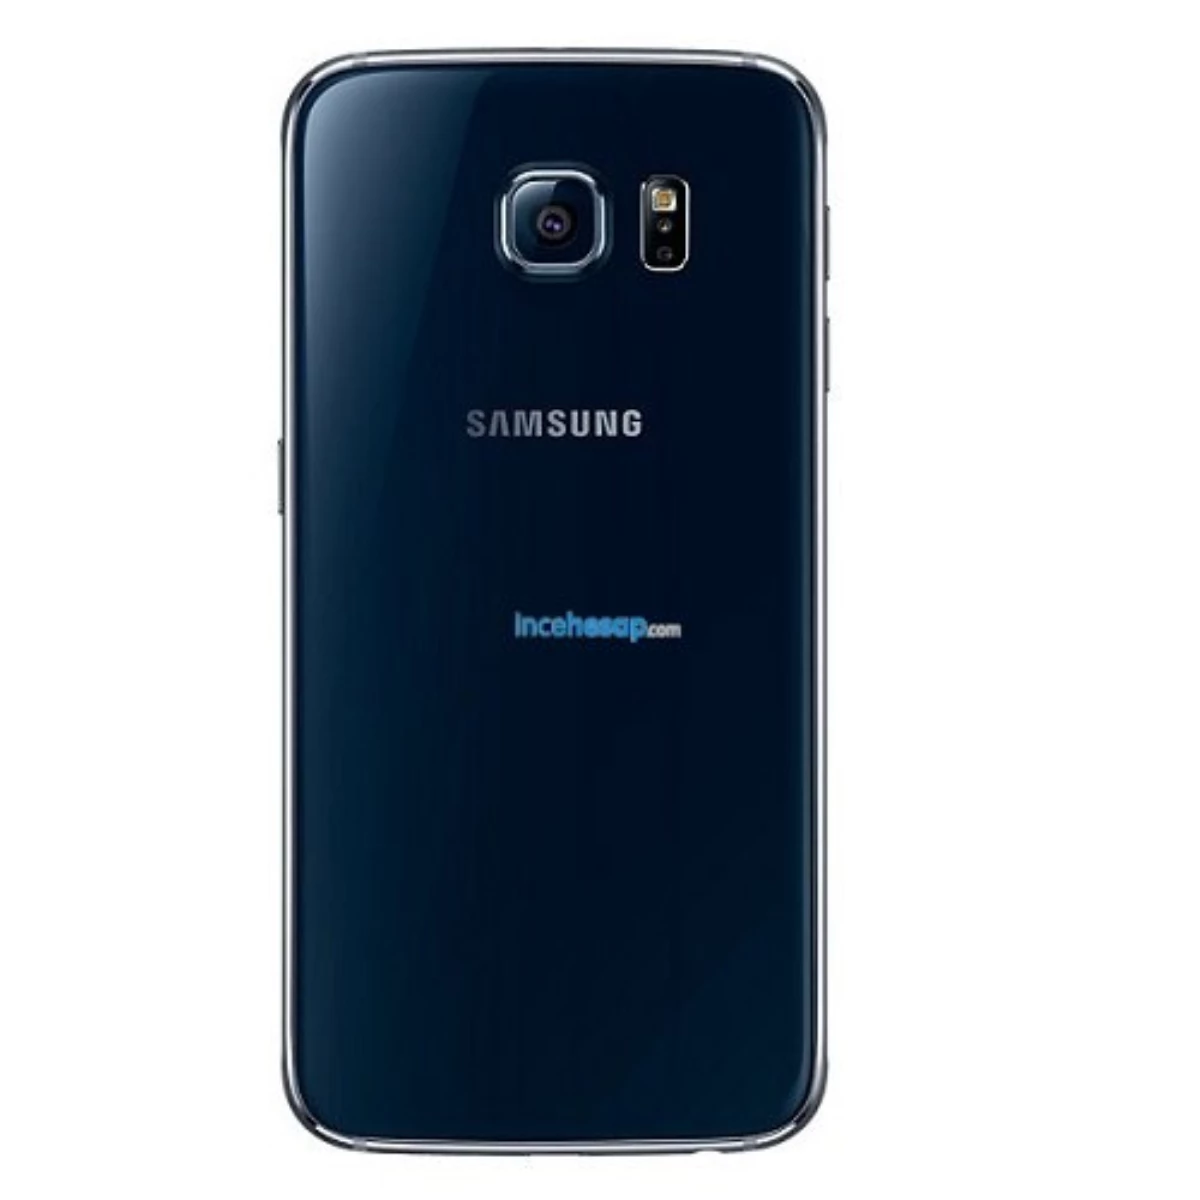 Samsung Galaxy G920fq S6 Siyah Cep Telefonu